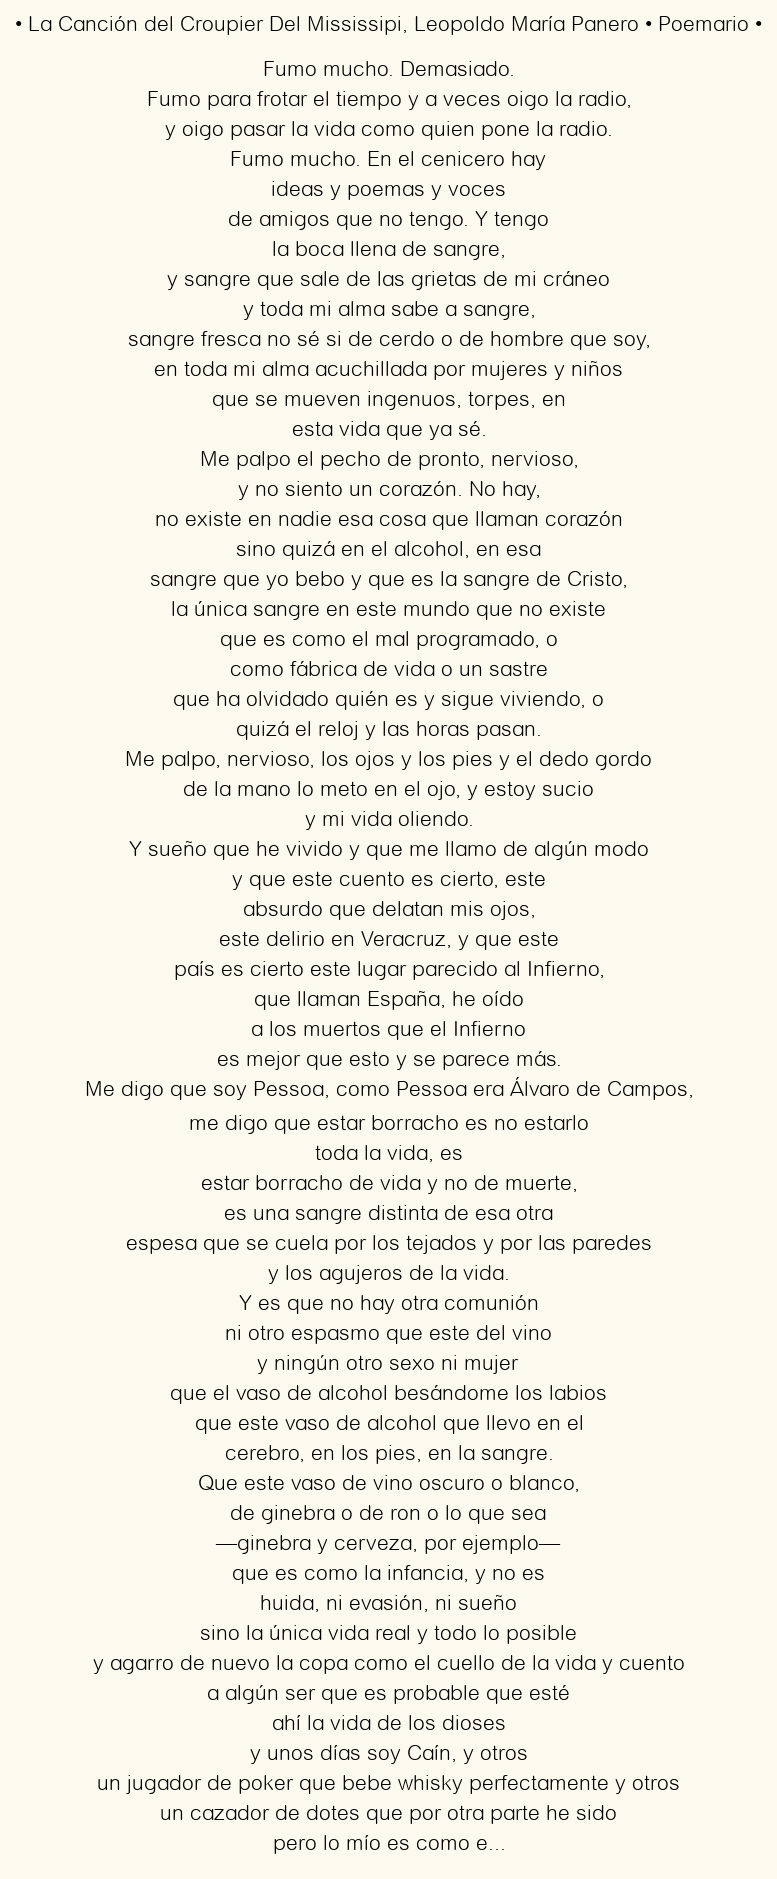 Imagen con el poema La Canción del Croupier Del Mississipi, por Leopoldo María Panero